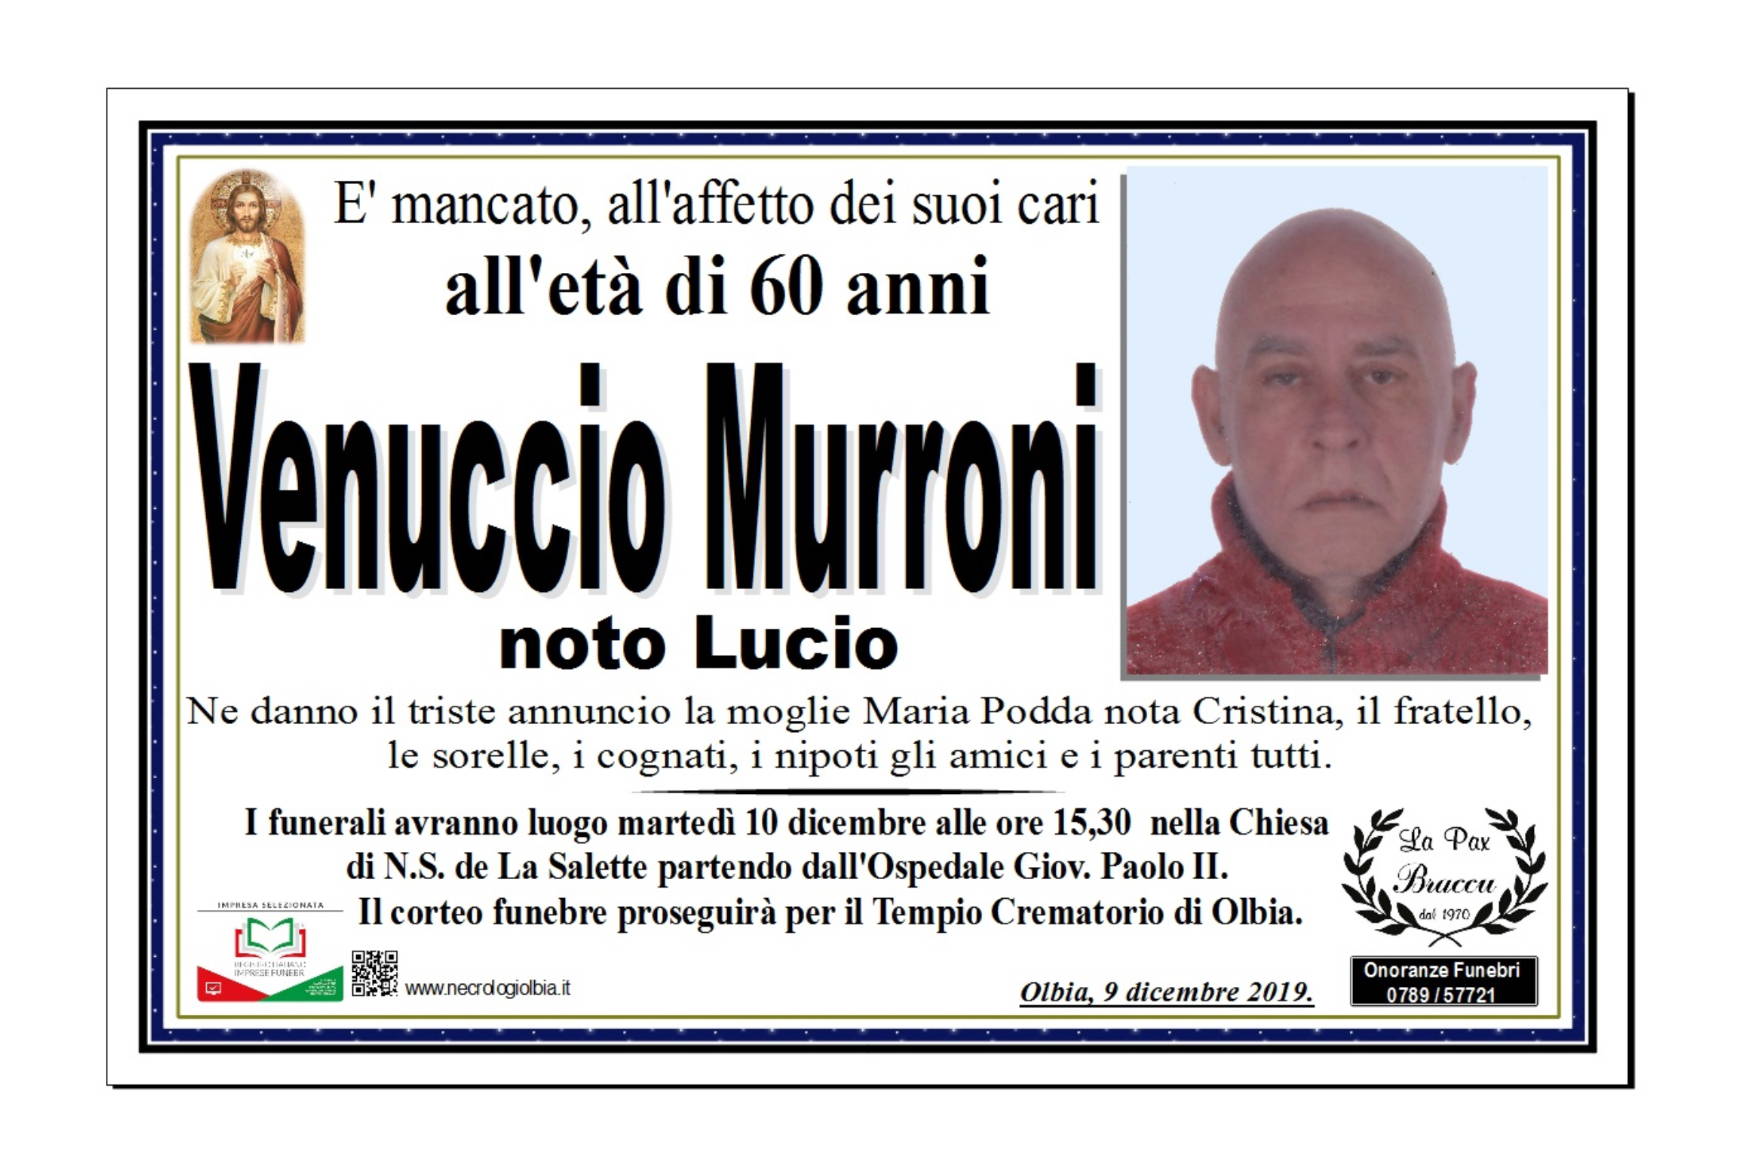 Venuccio Murroni